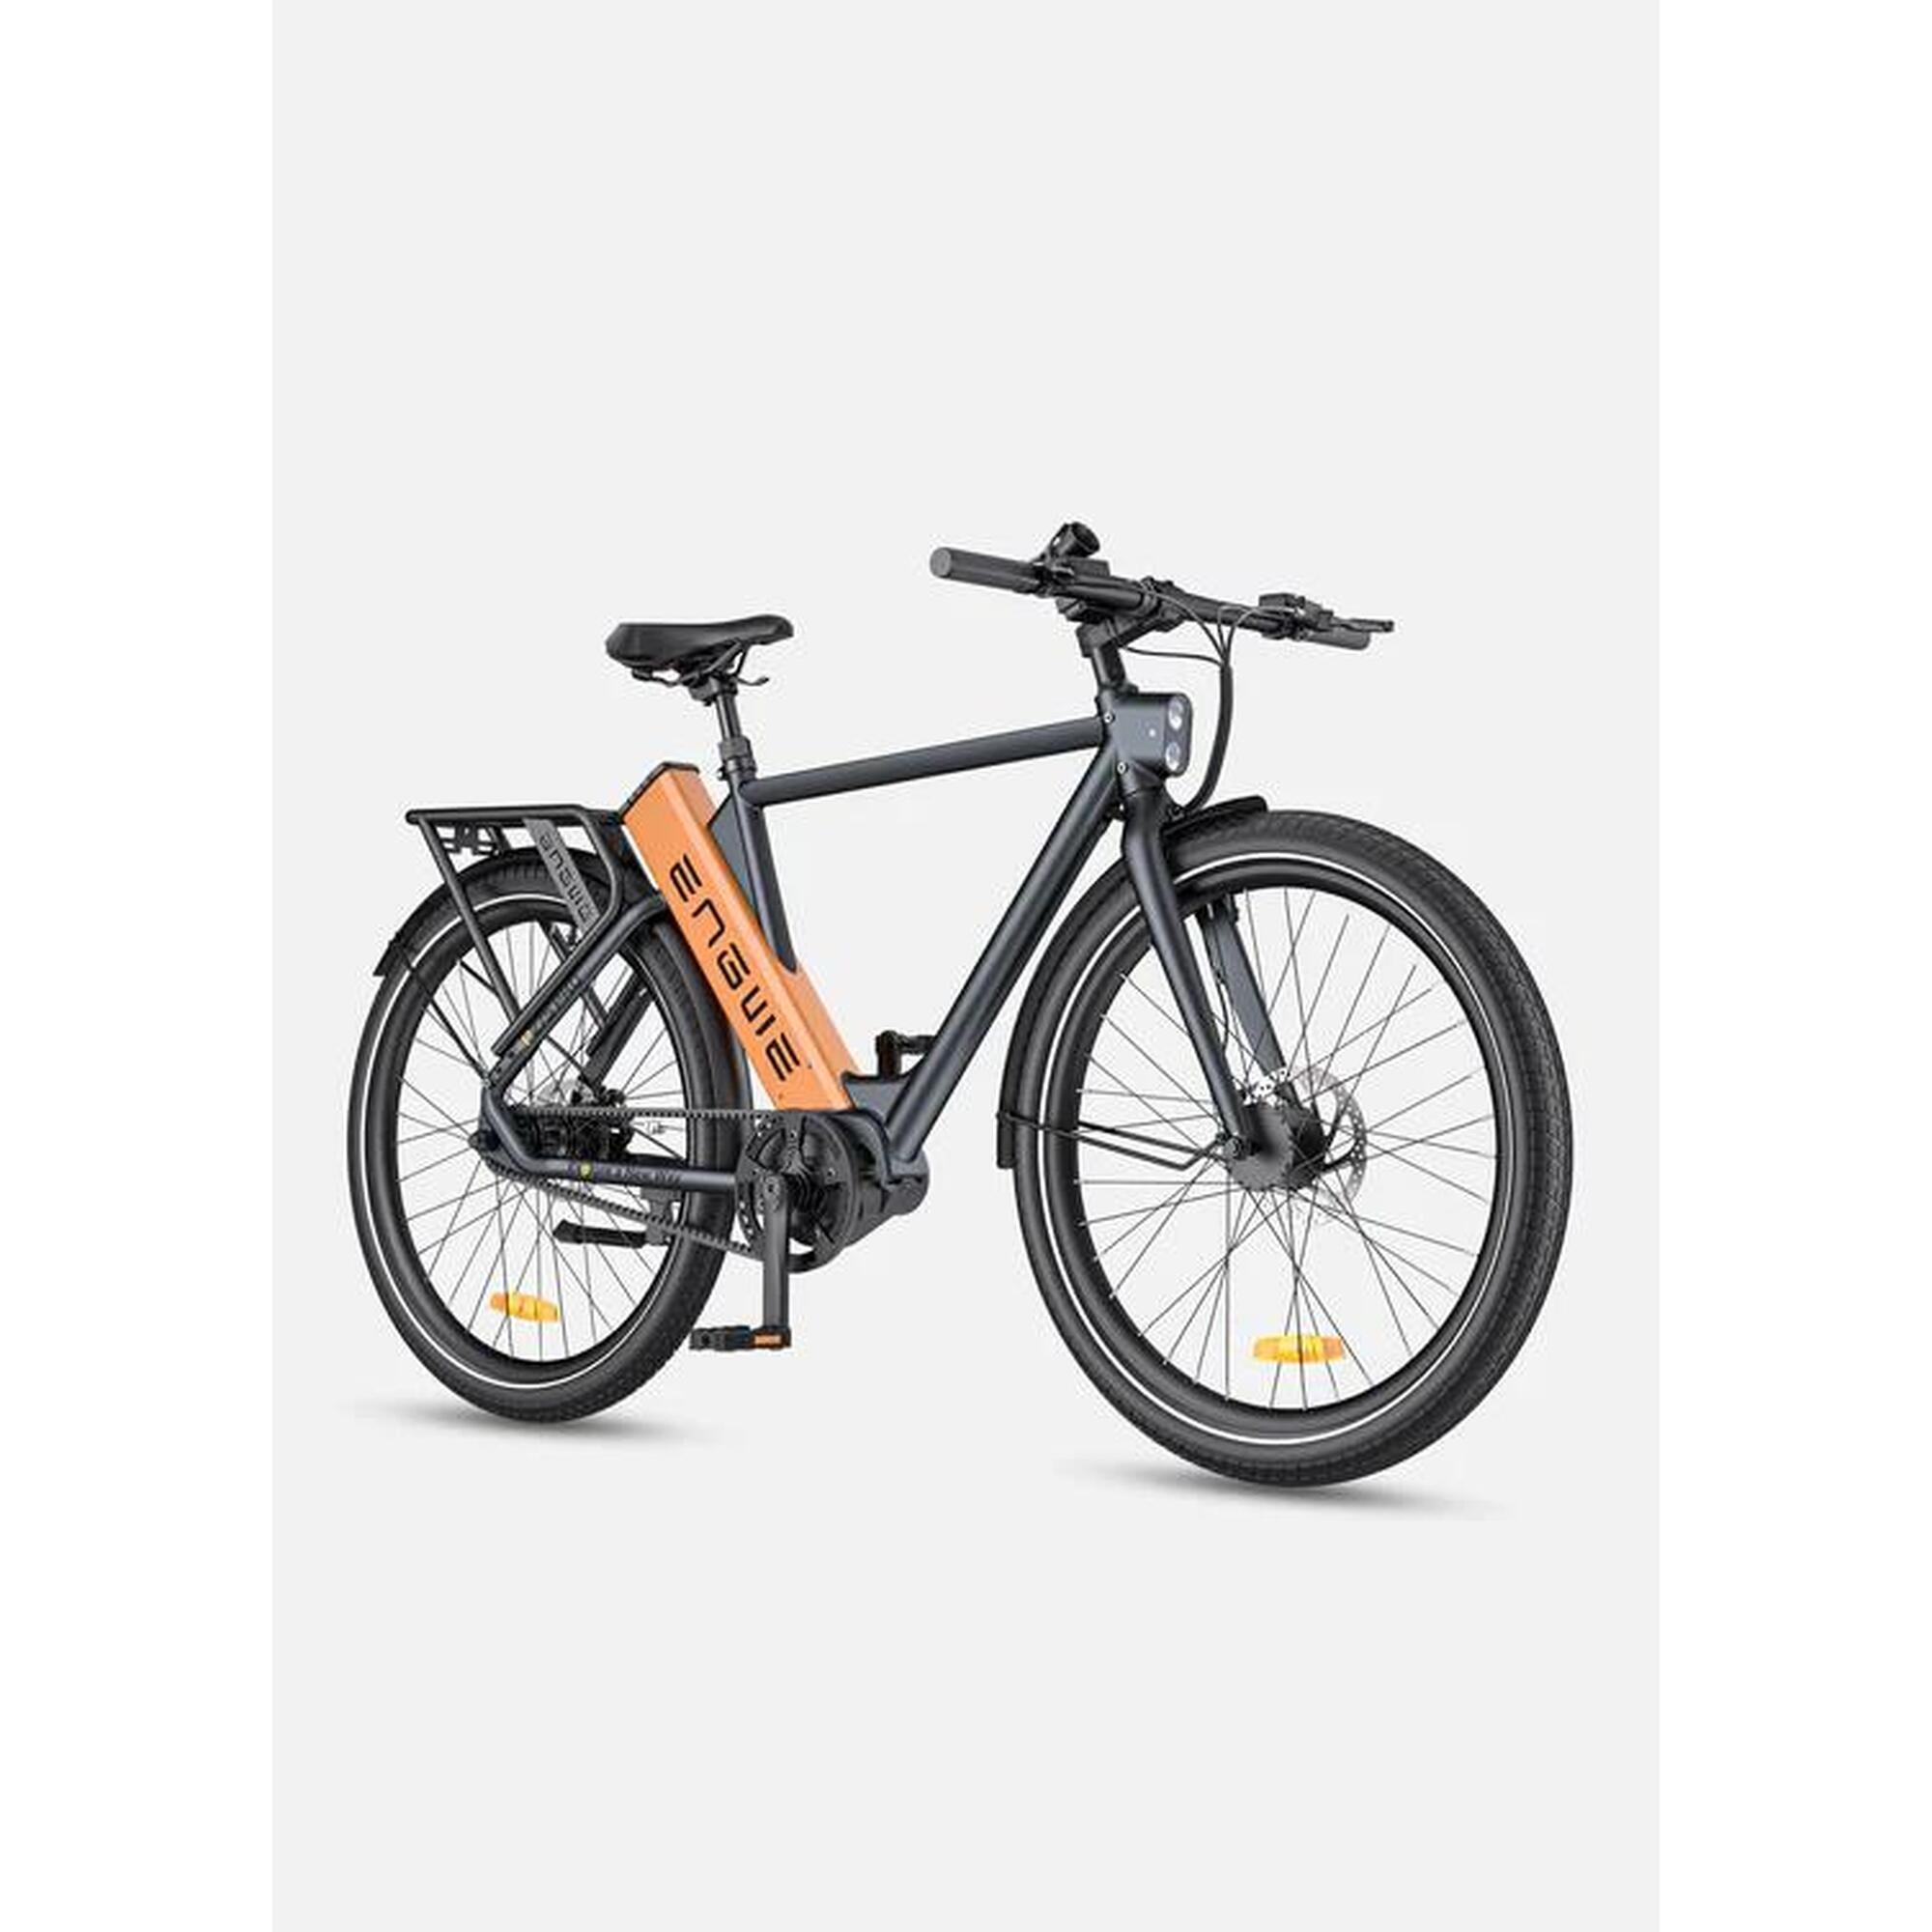 Bicicleta Elétrica Engwe P275 Pro - 250W - Preto e laranja